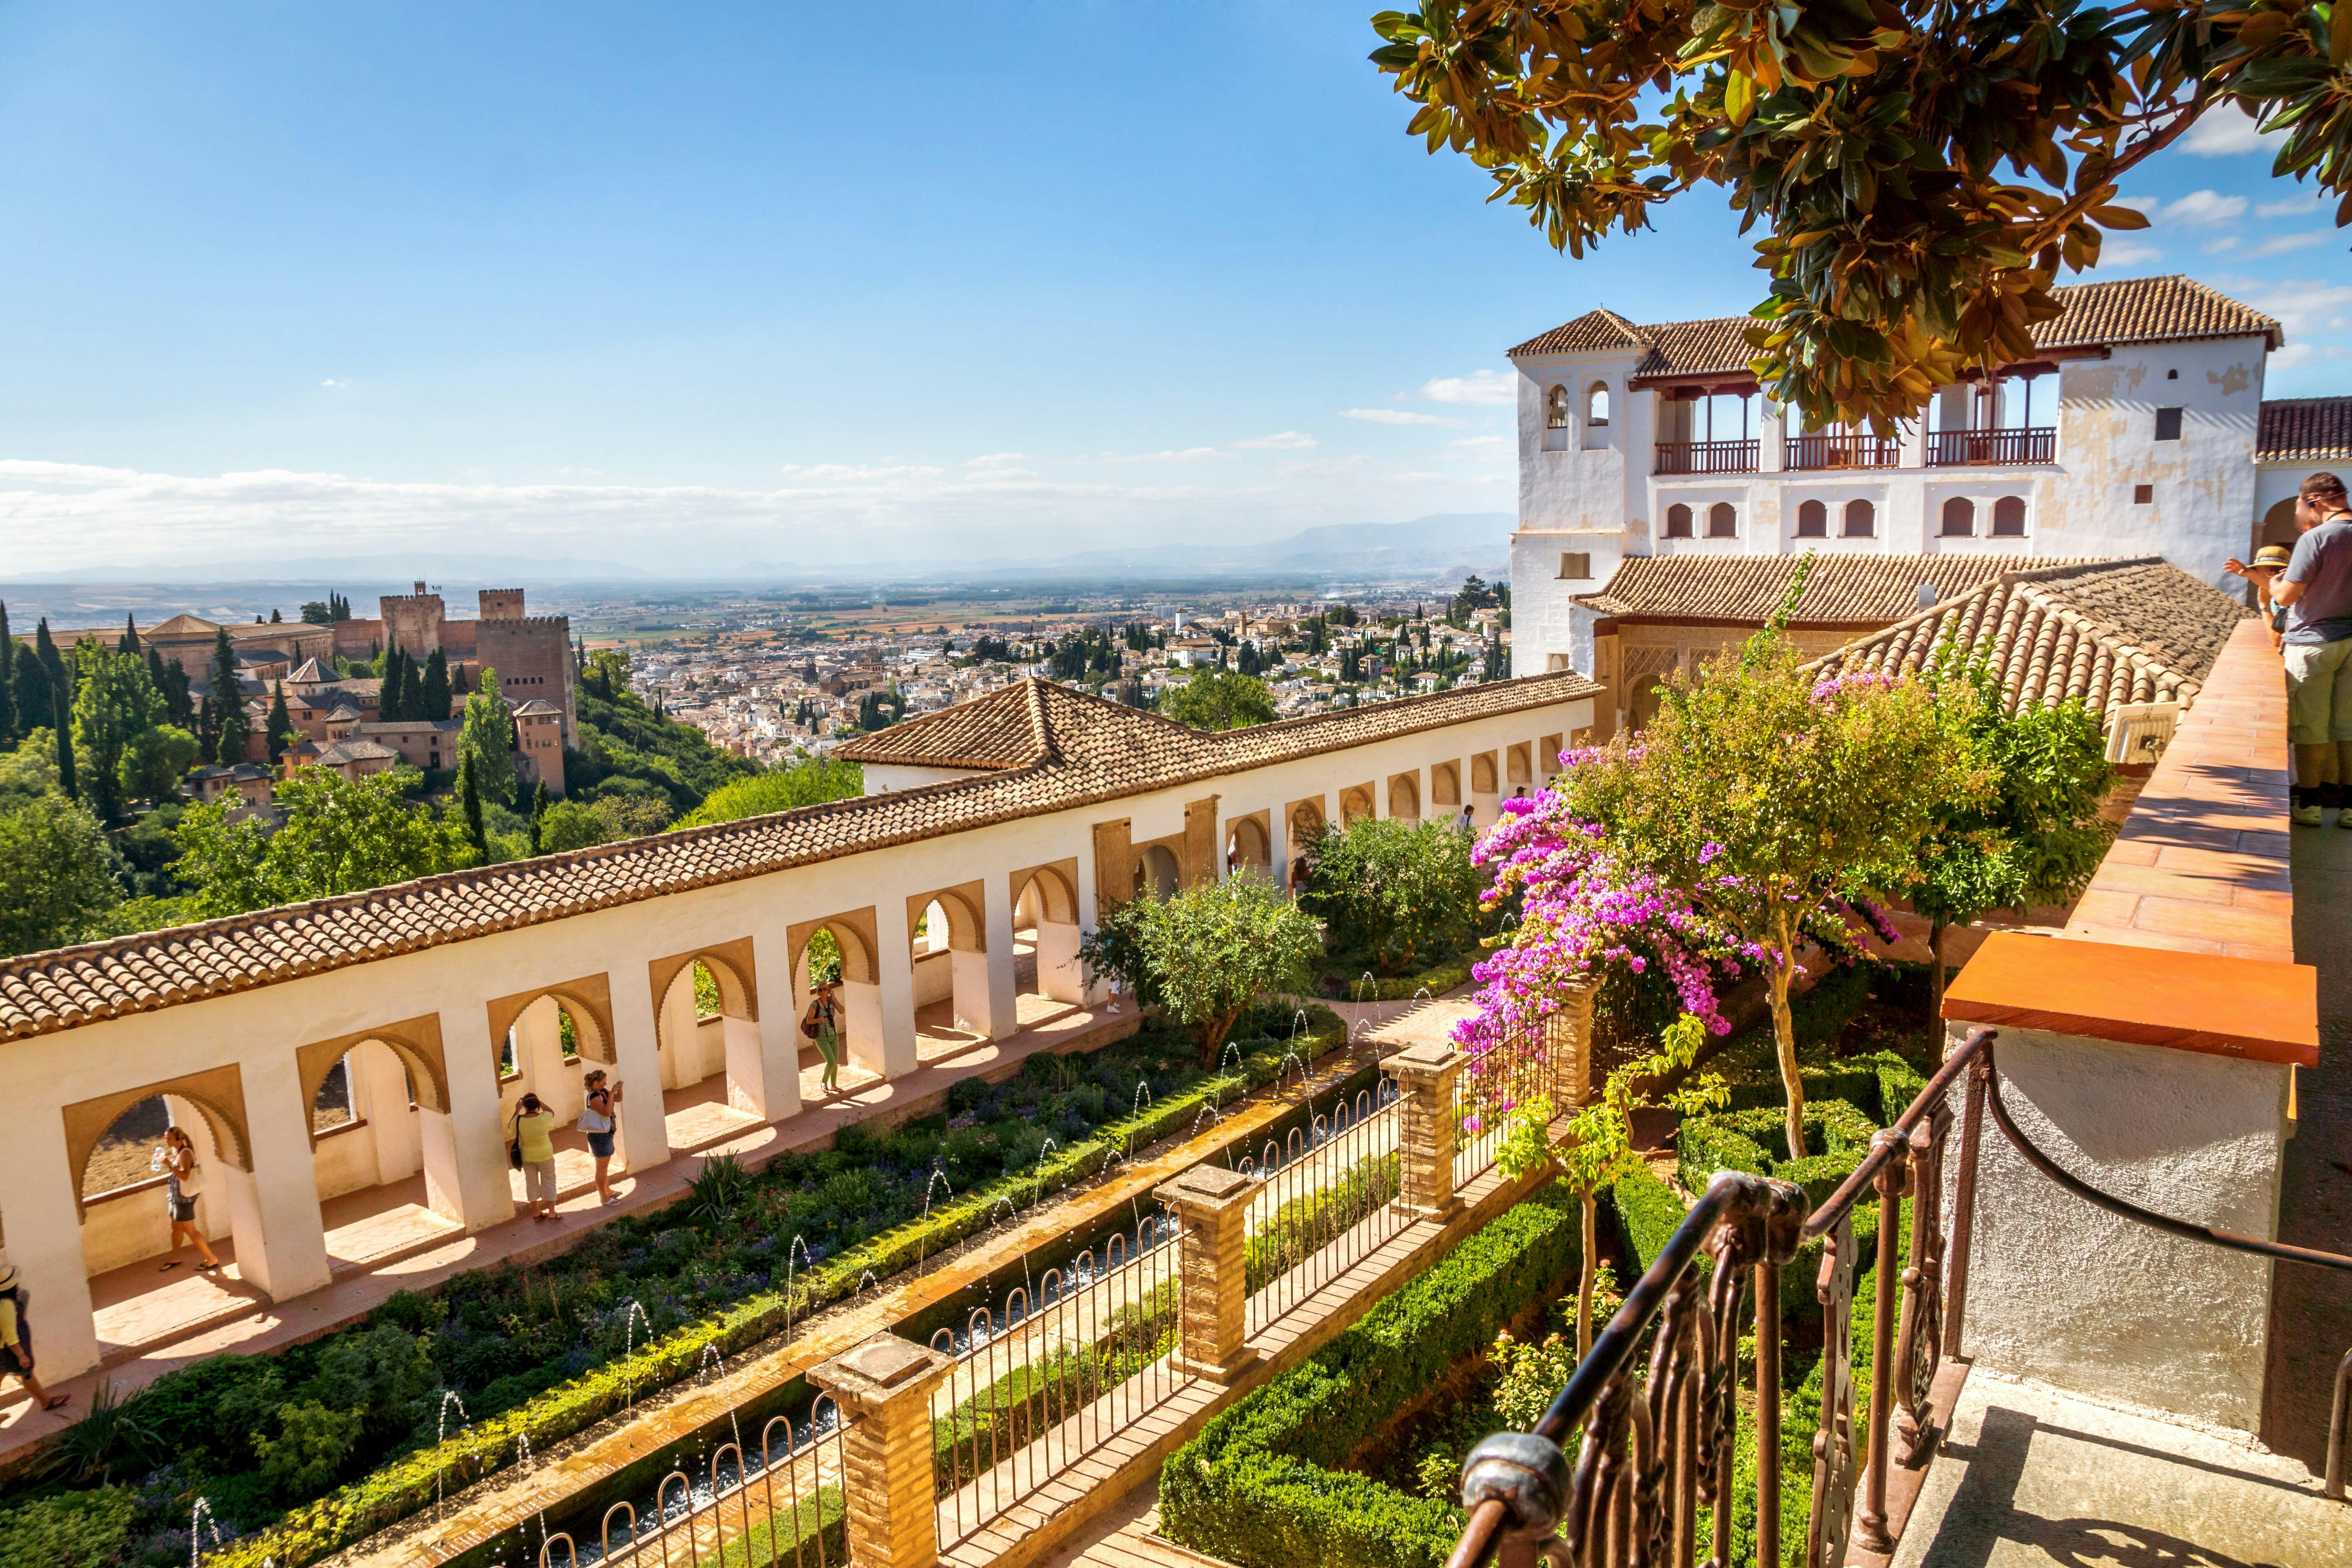 Alhambra e Generalife: ingresso sem fila e visita com um guia especializado